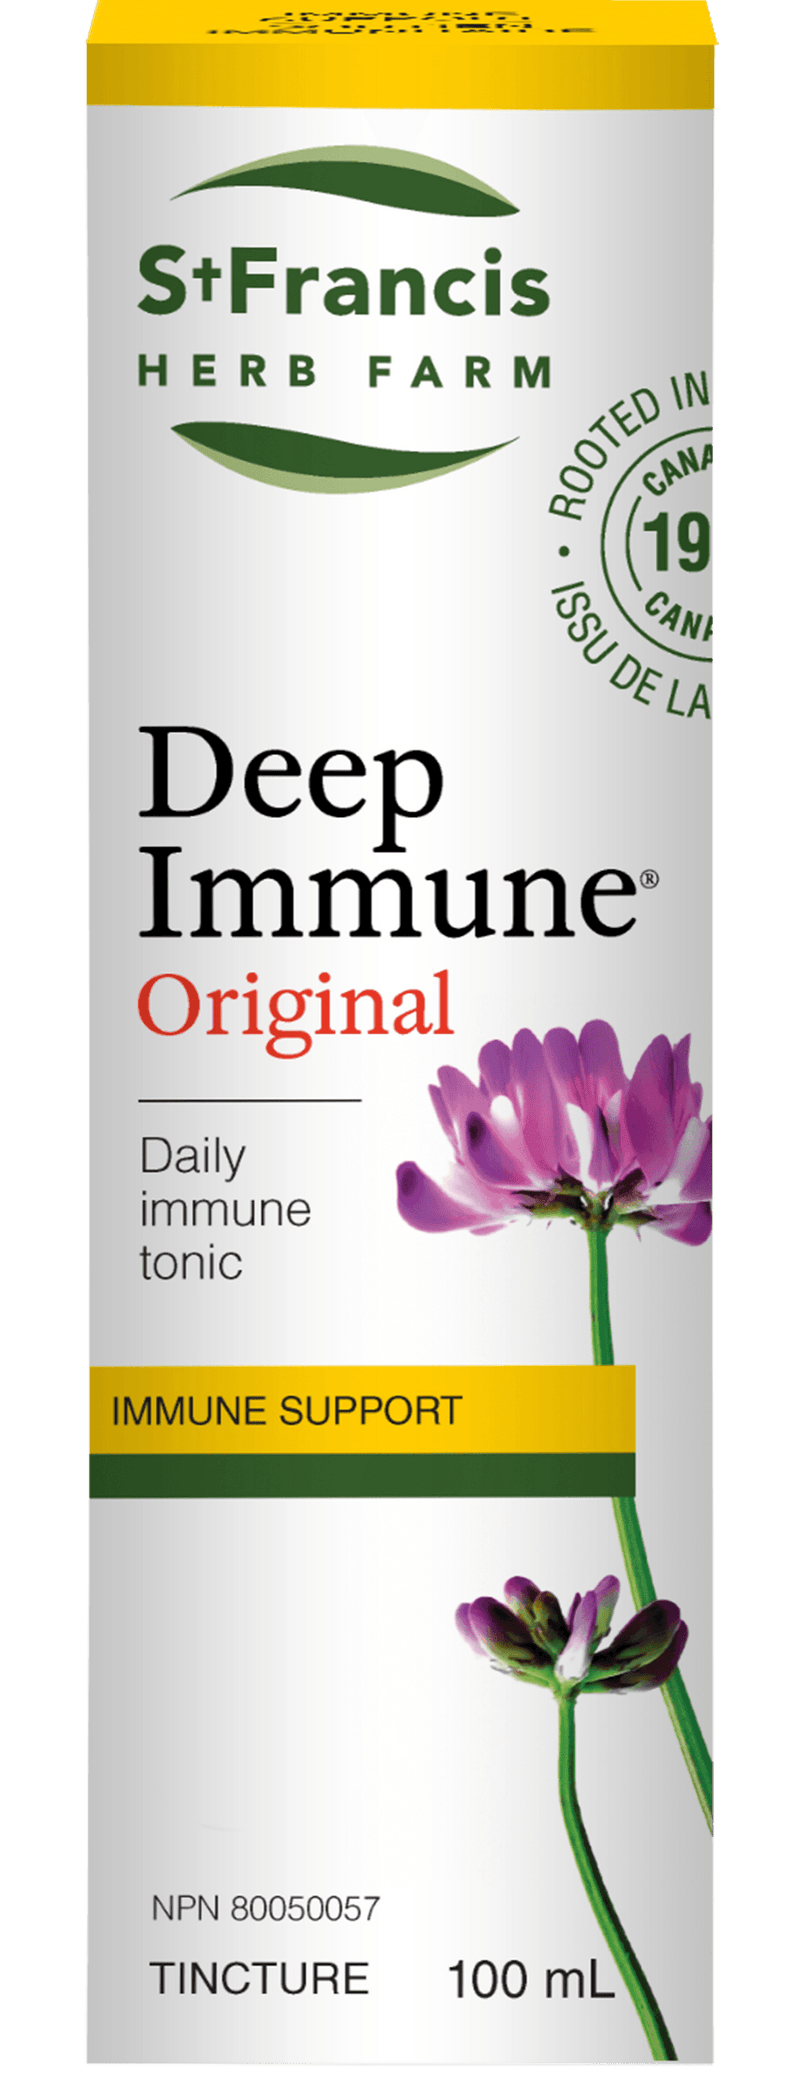 St. Francis Deep Immune® Original 100mL - Five Natural